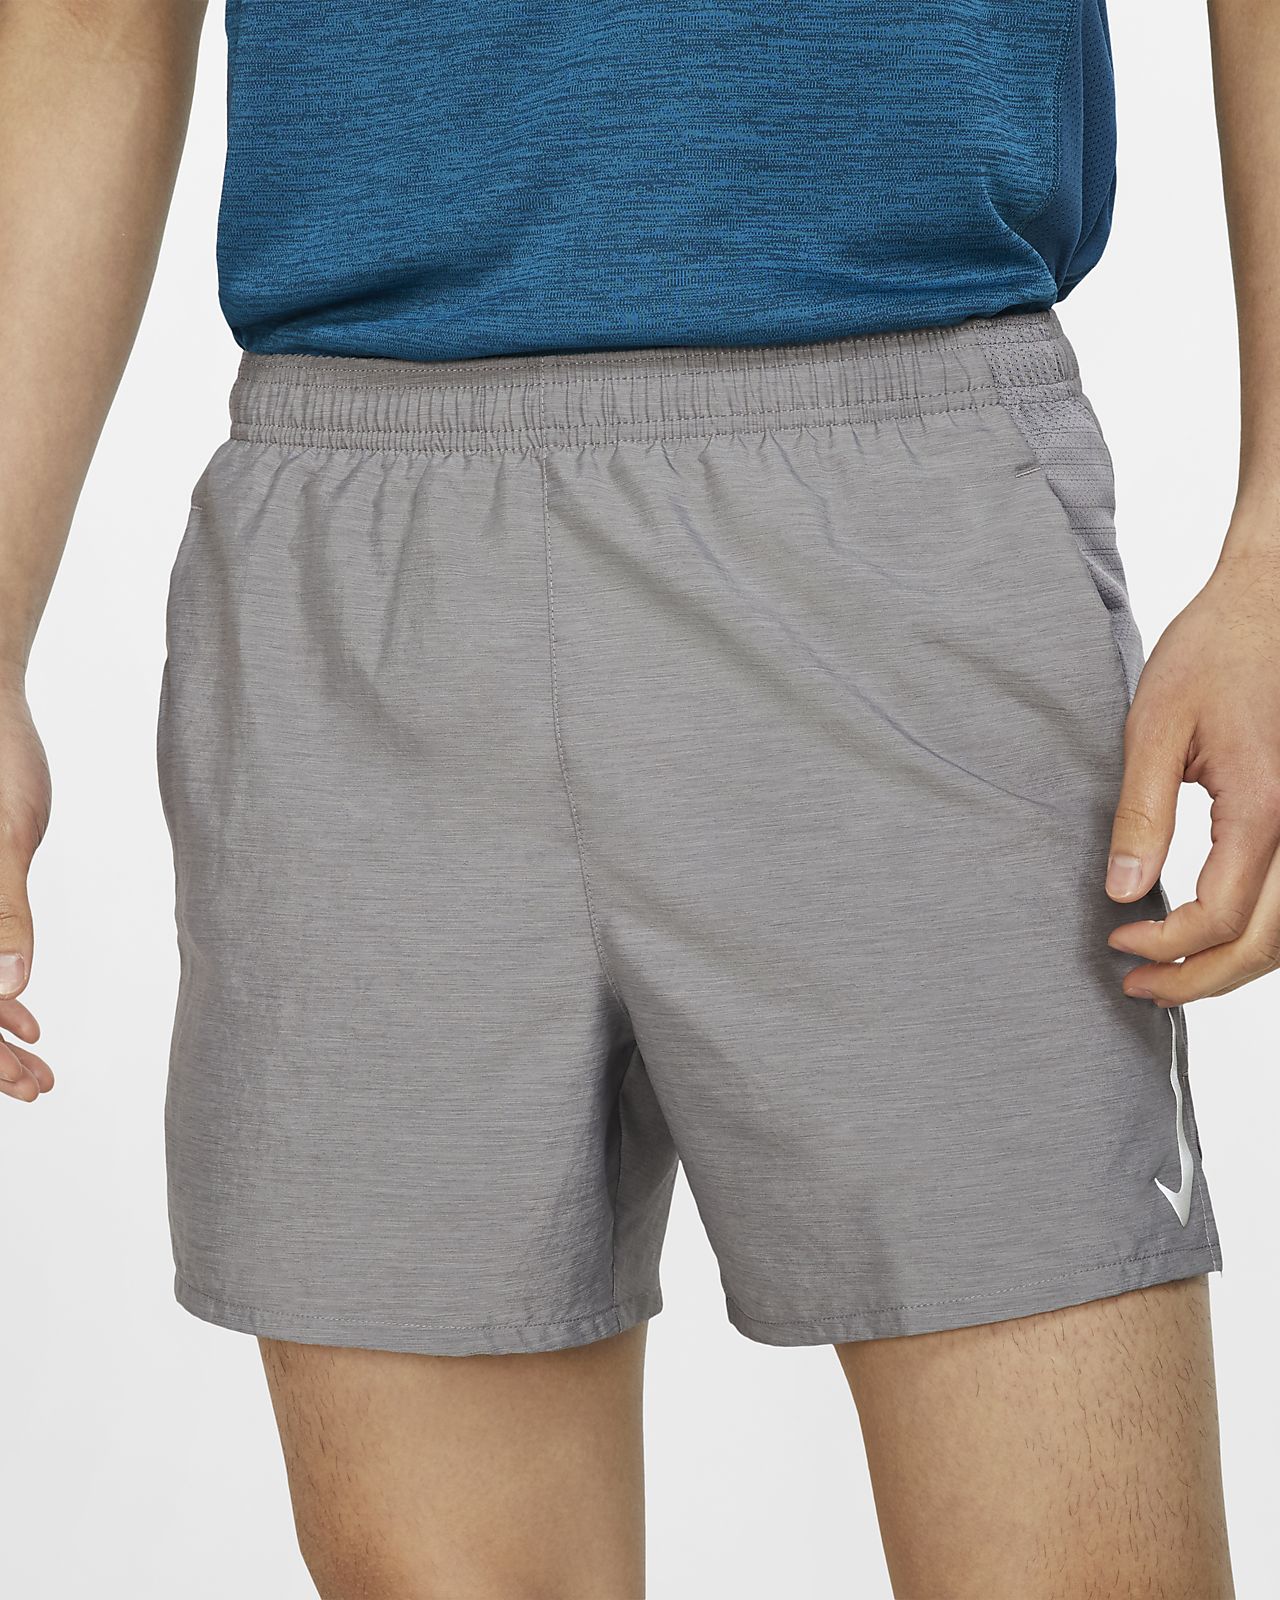 nike shorts compression liner